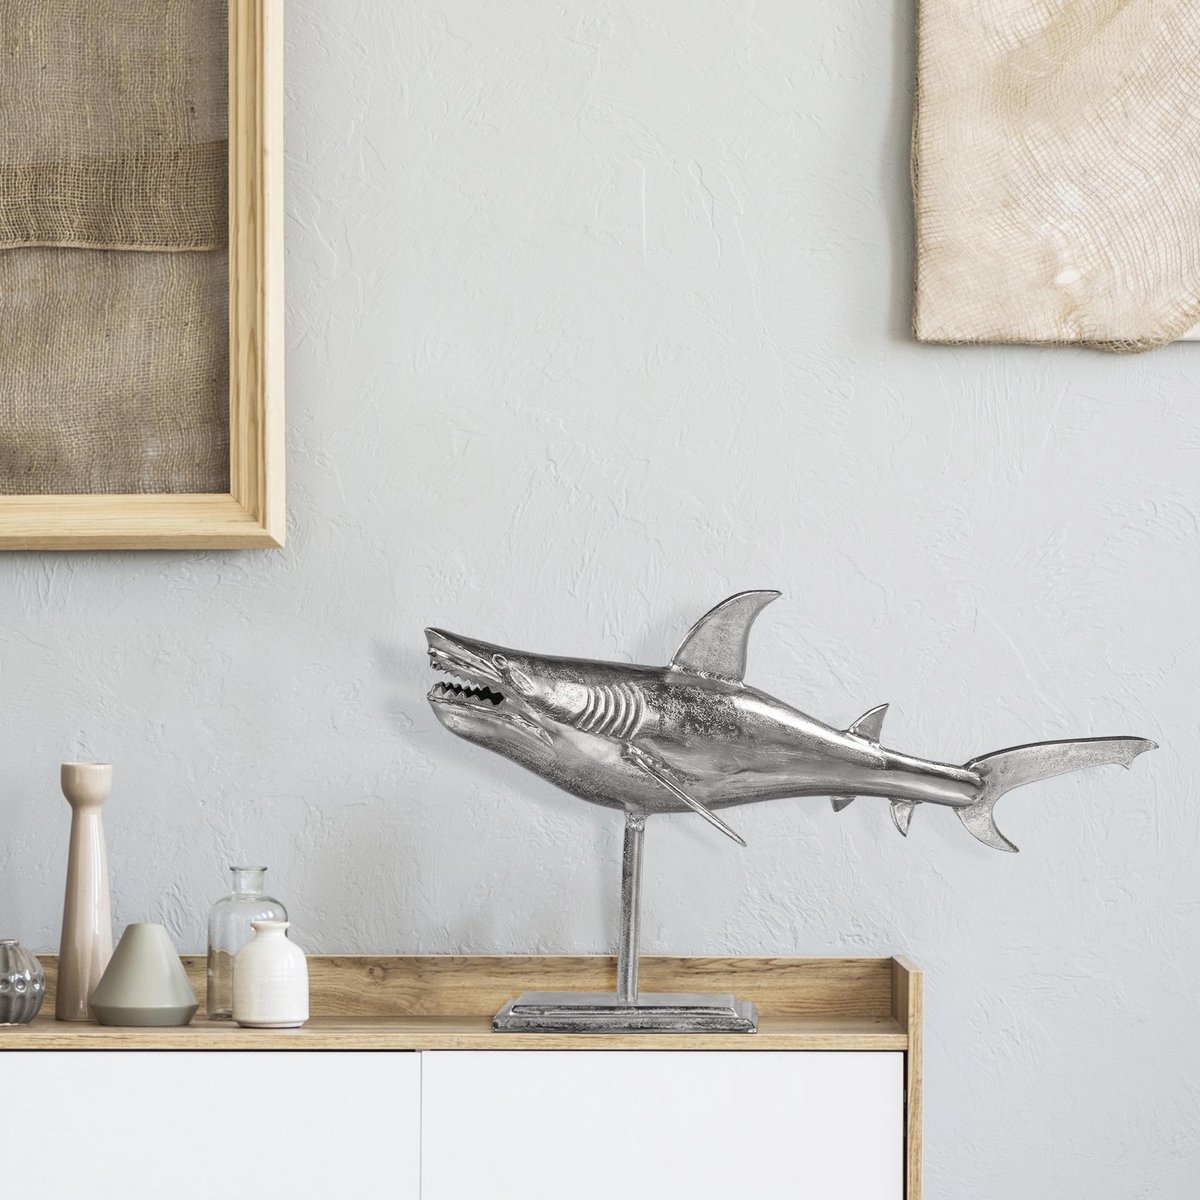 Womo-design Haaien Sculptuur Zilver, 68x39 Cm, Met Nikkel Afwerking, Gemaakt Van Aluminium